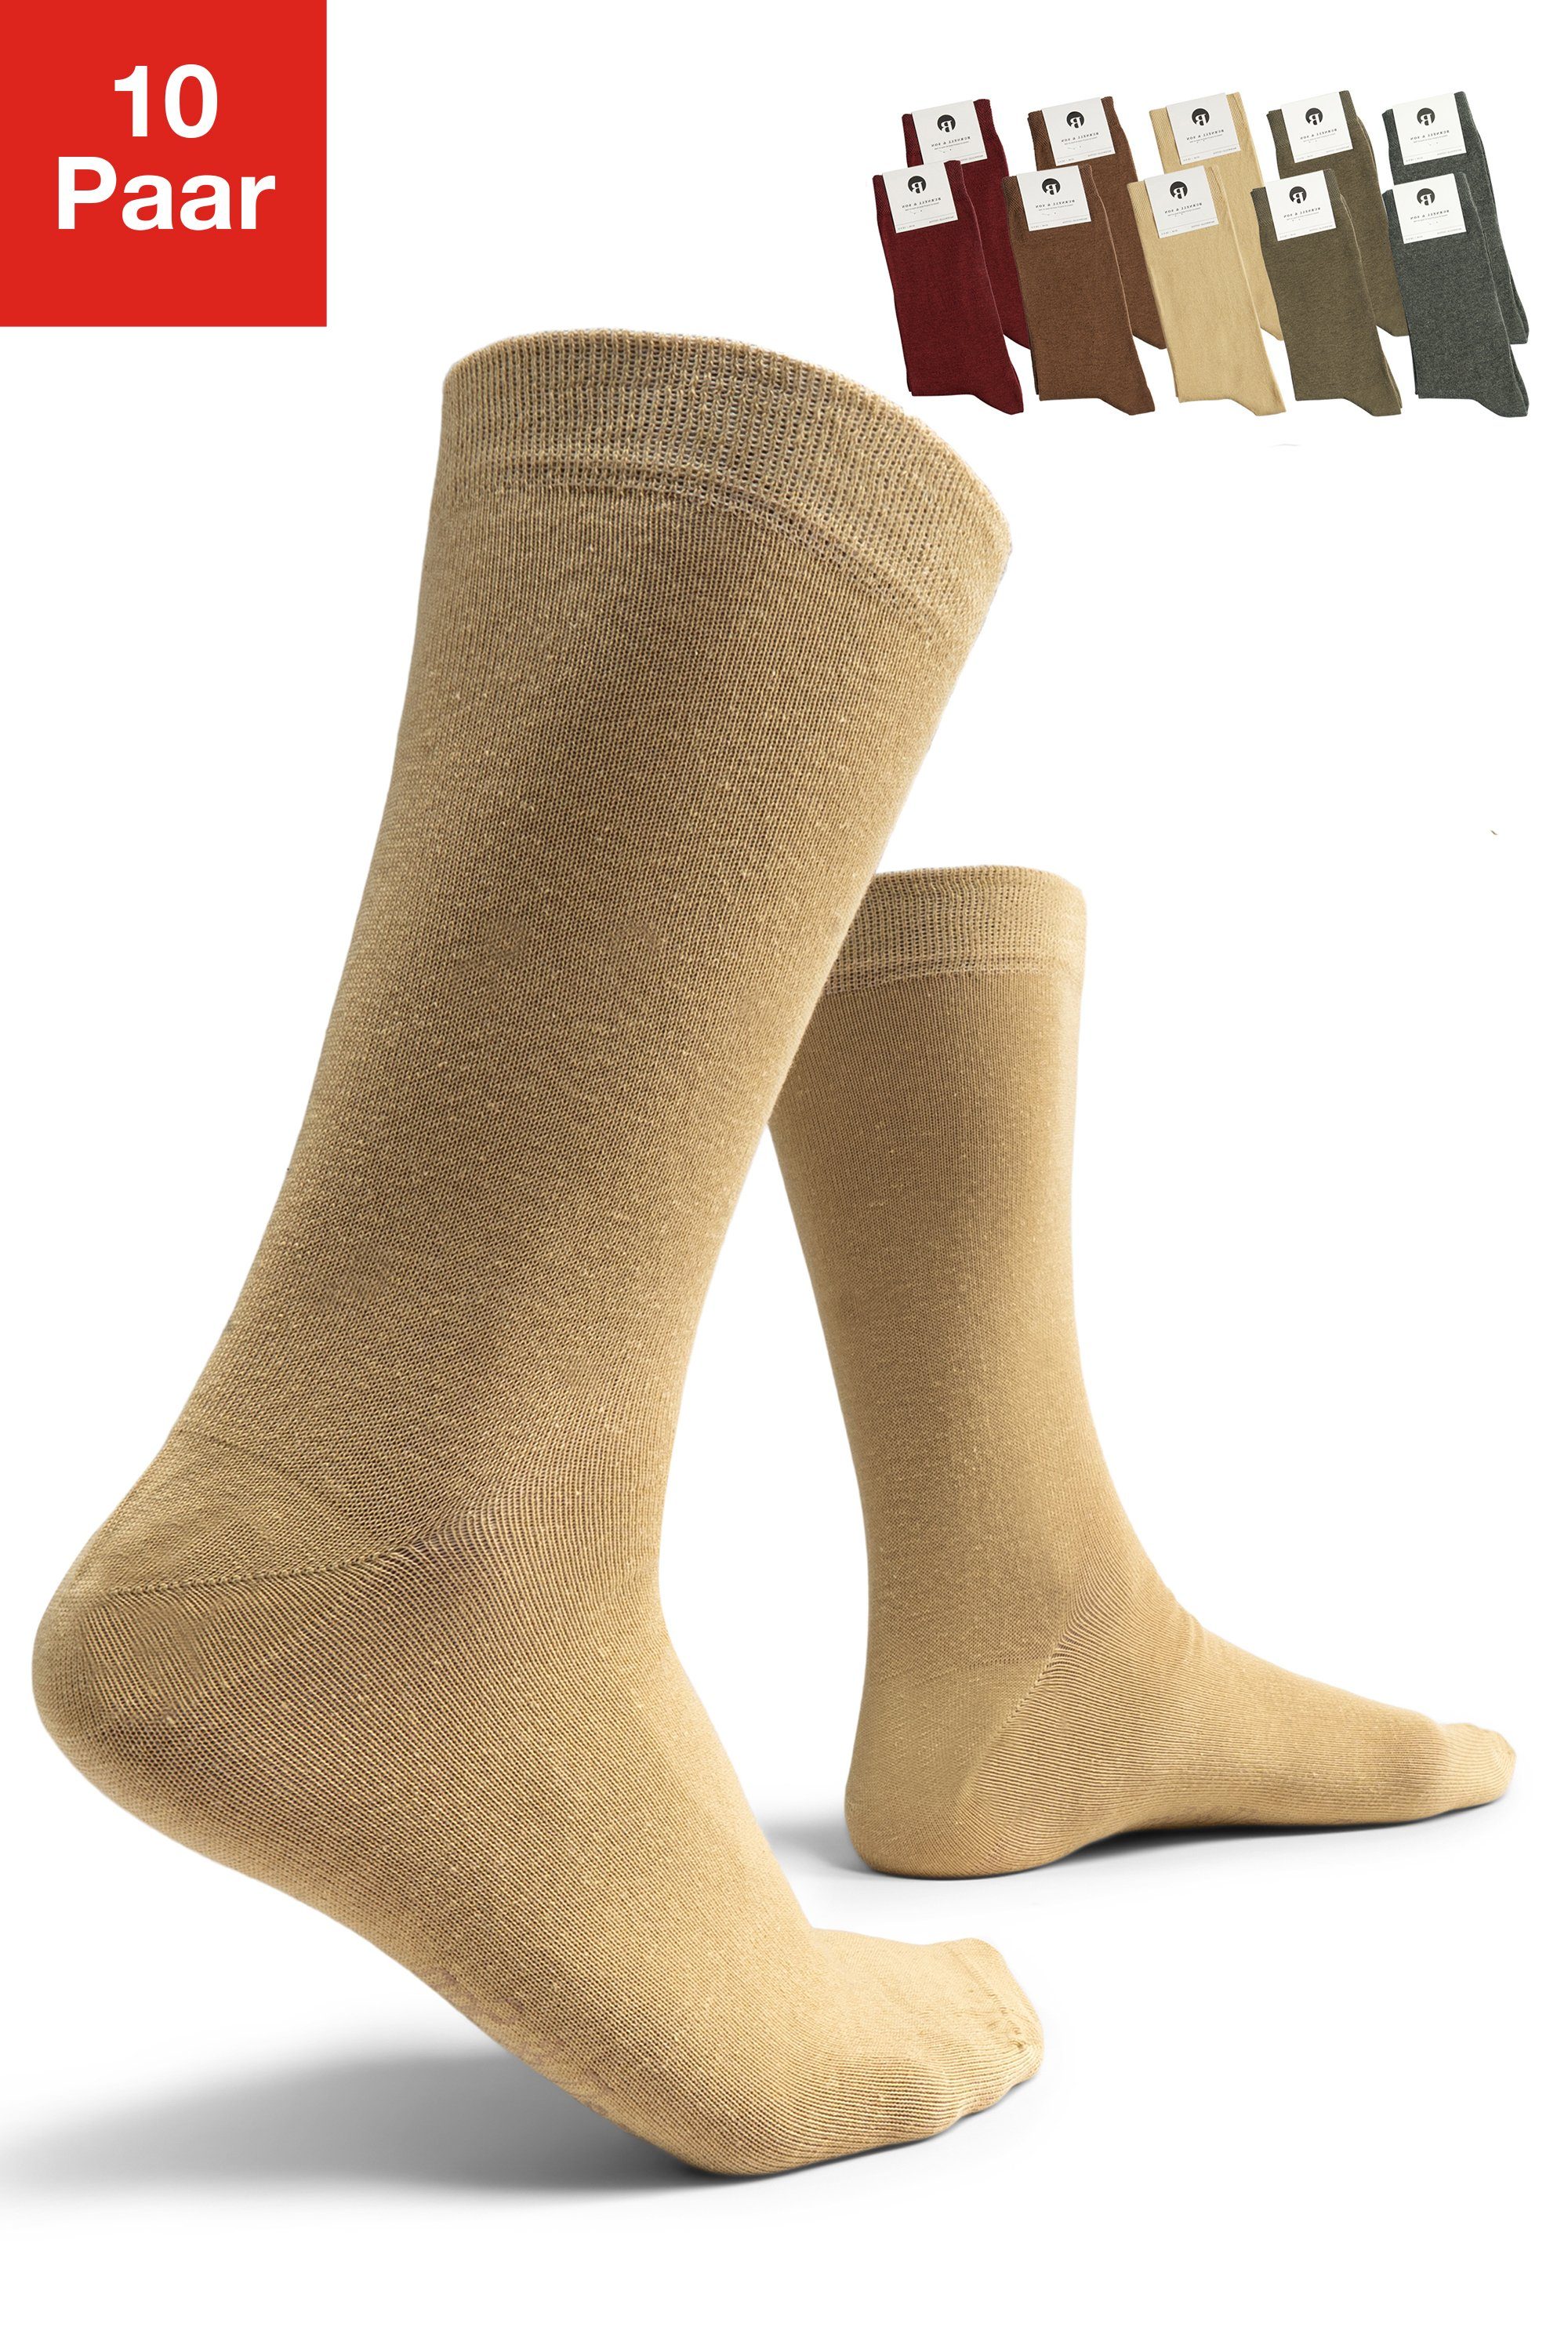 Burnell & Son Businesssocken Socken für Damen & Herren (Set, 10-Paar) mit Komfortbund aus Baumwolle Naturfarben